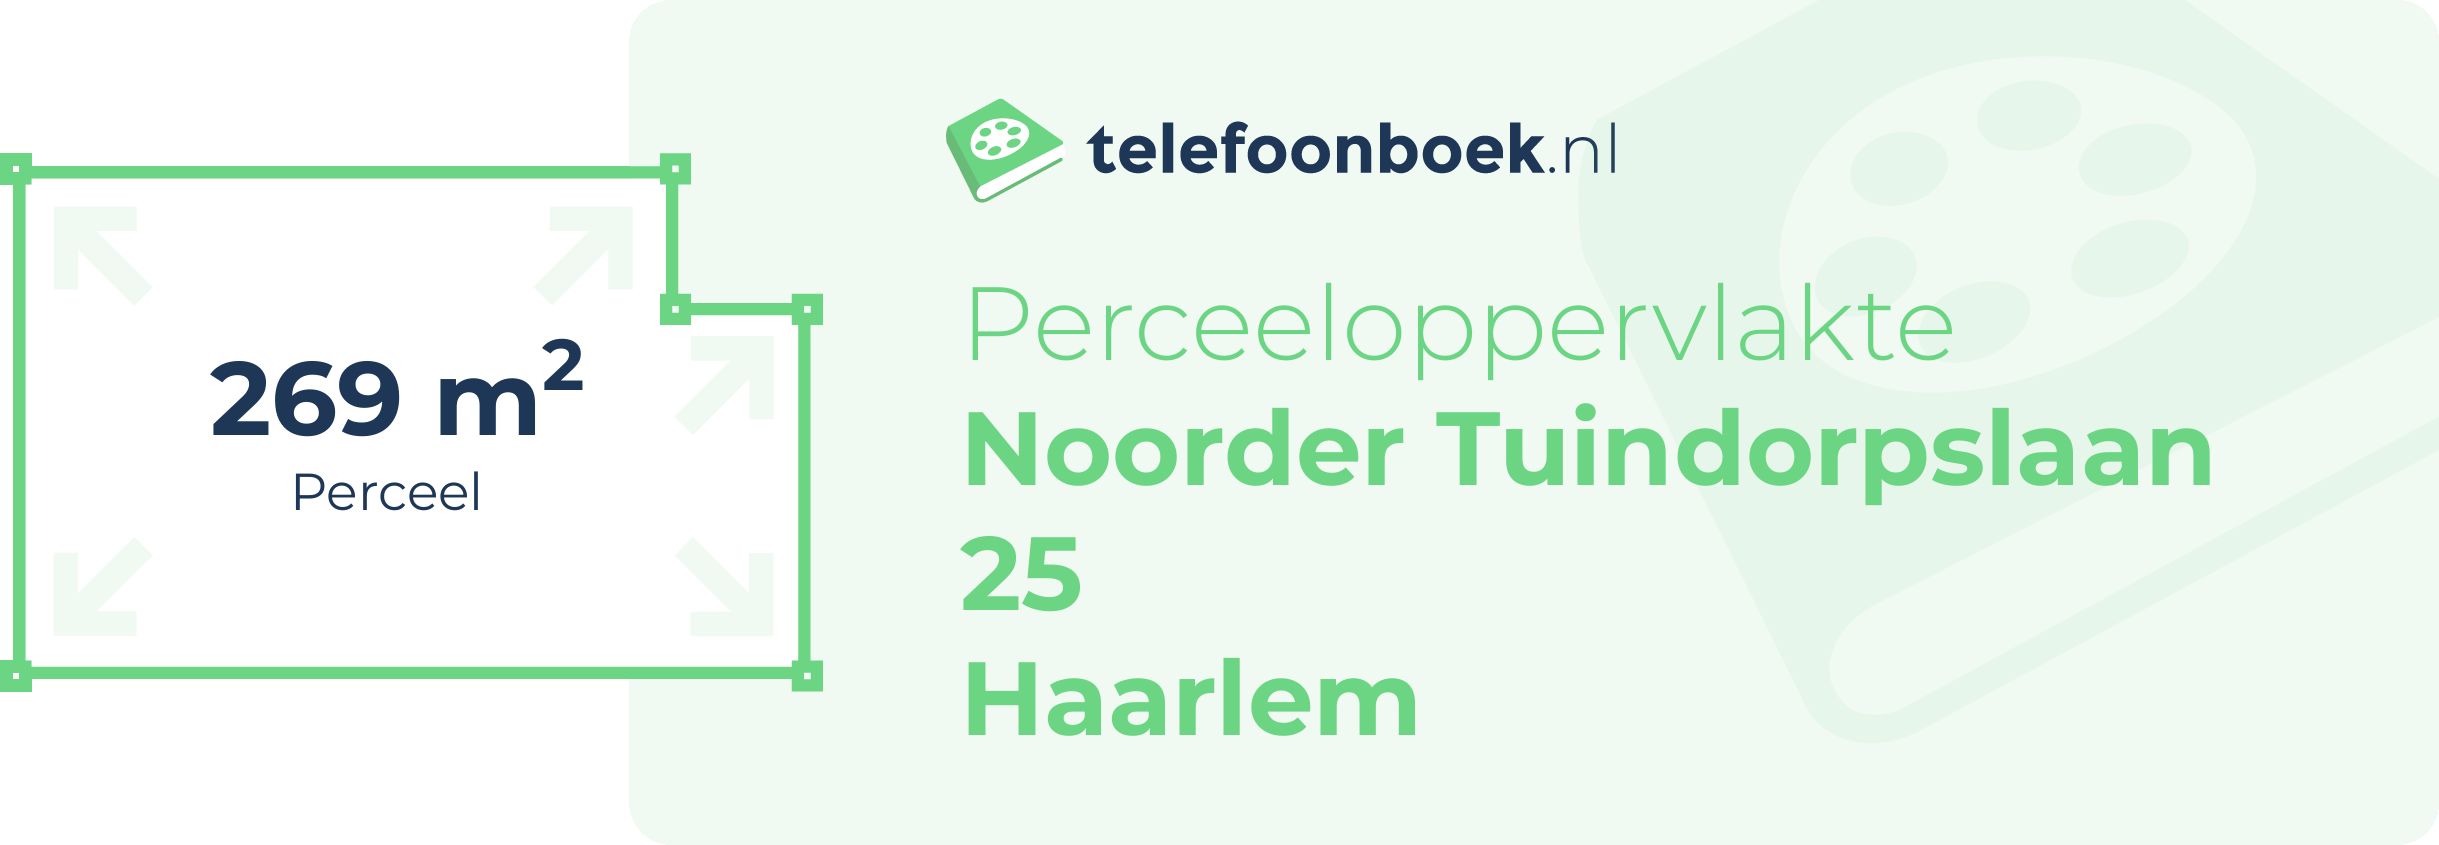 Perceeloppervlakte Noorder Tuindorpslaan 25 Haarlem